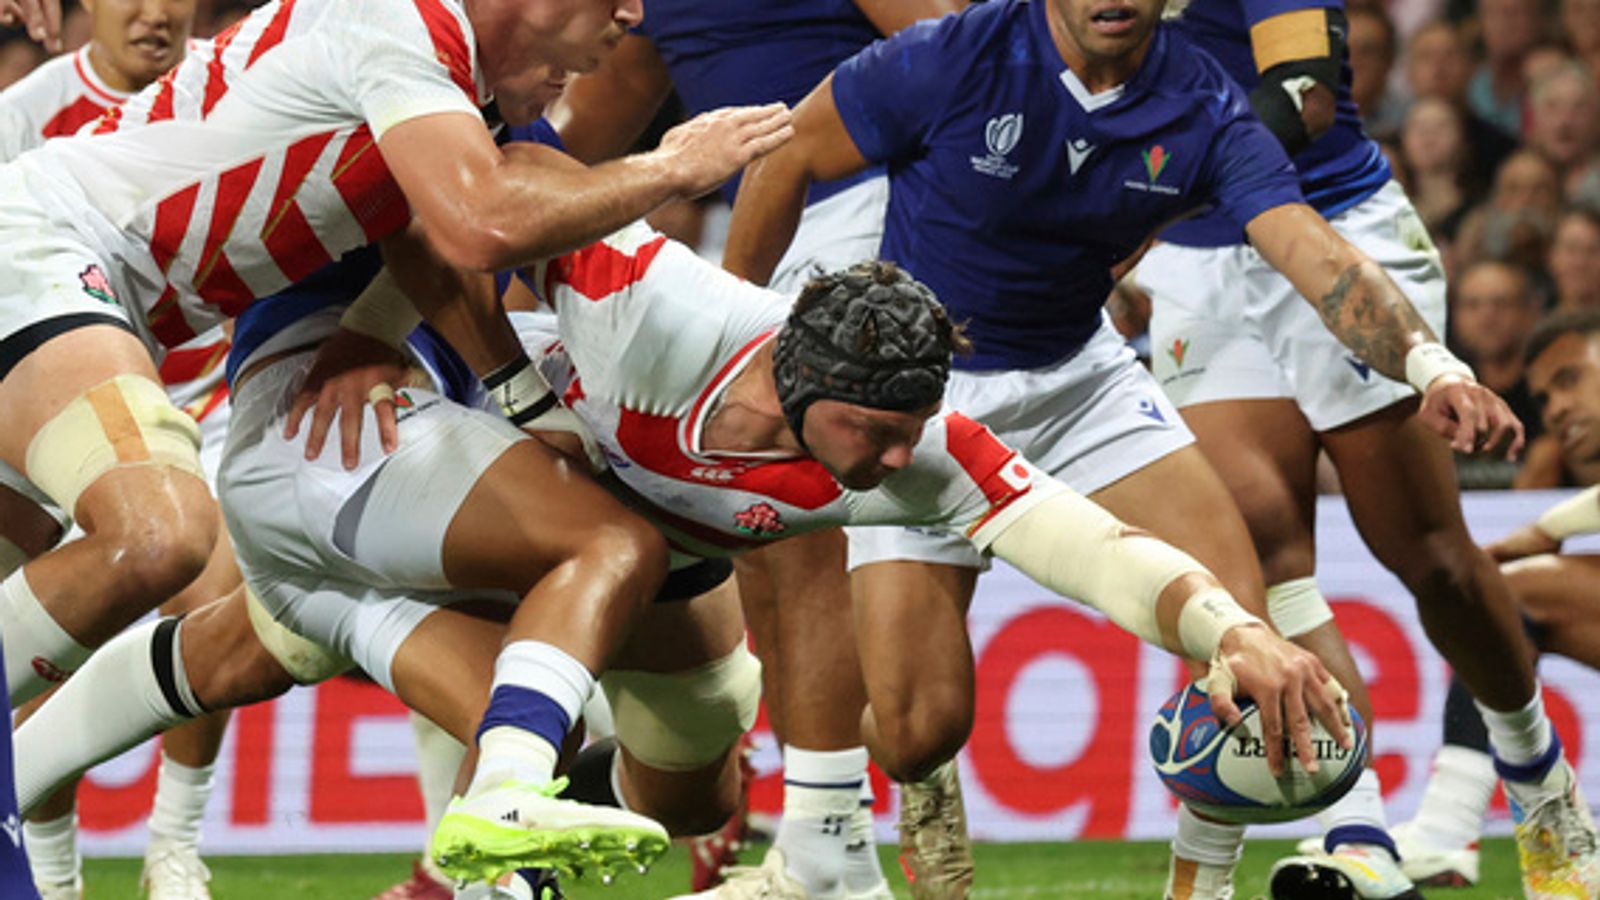 Coupe du monde de rugby : l’Angleterre s’assure une place en quart de finale après que le Japon ait tenu tête aux Samoa dans un match serré 28-22 |  Actualités du rugby à XV